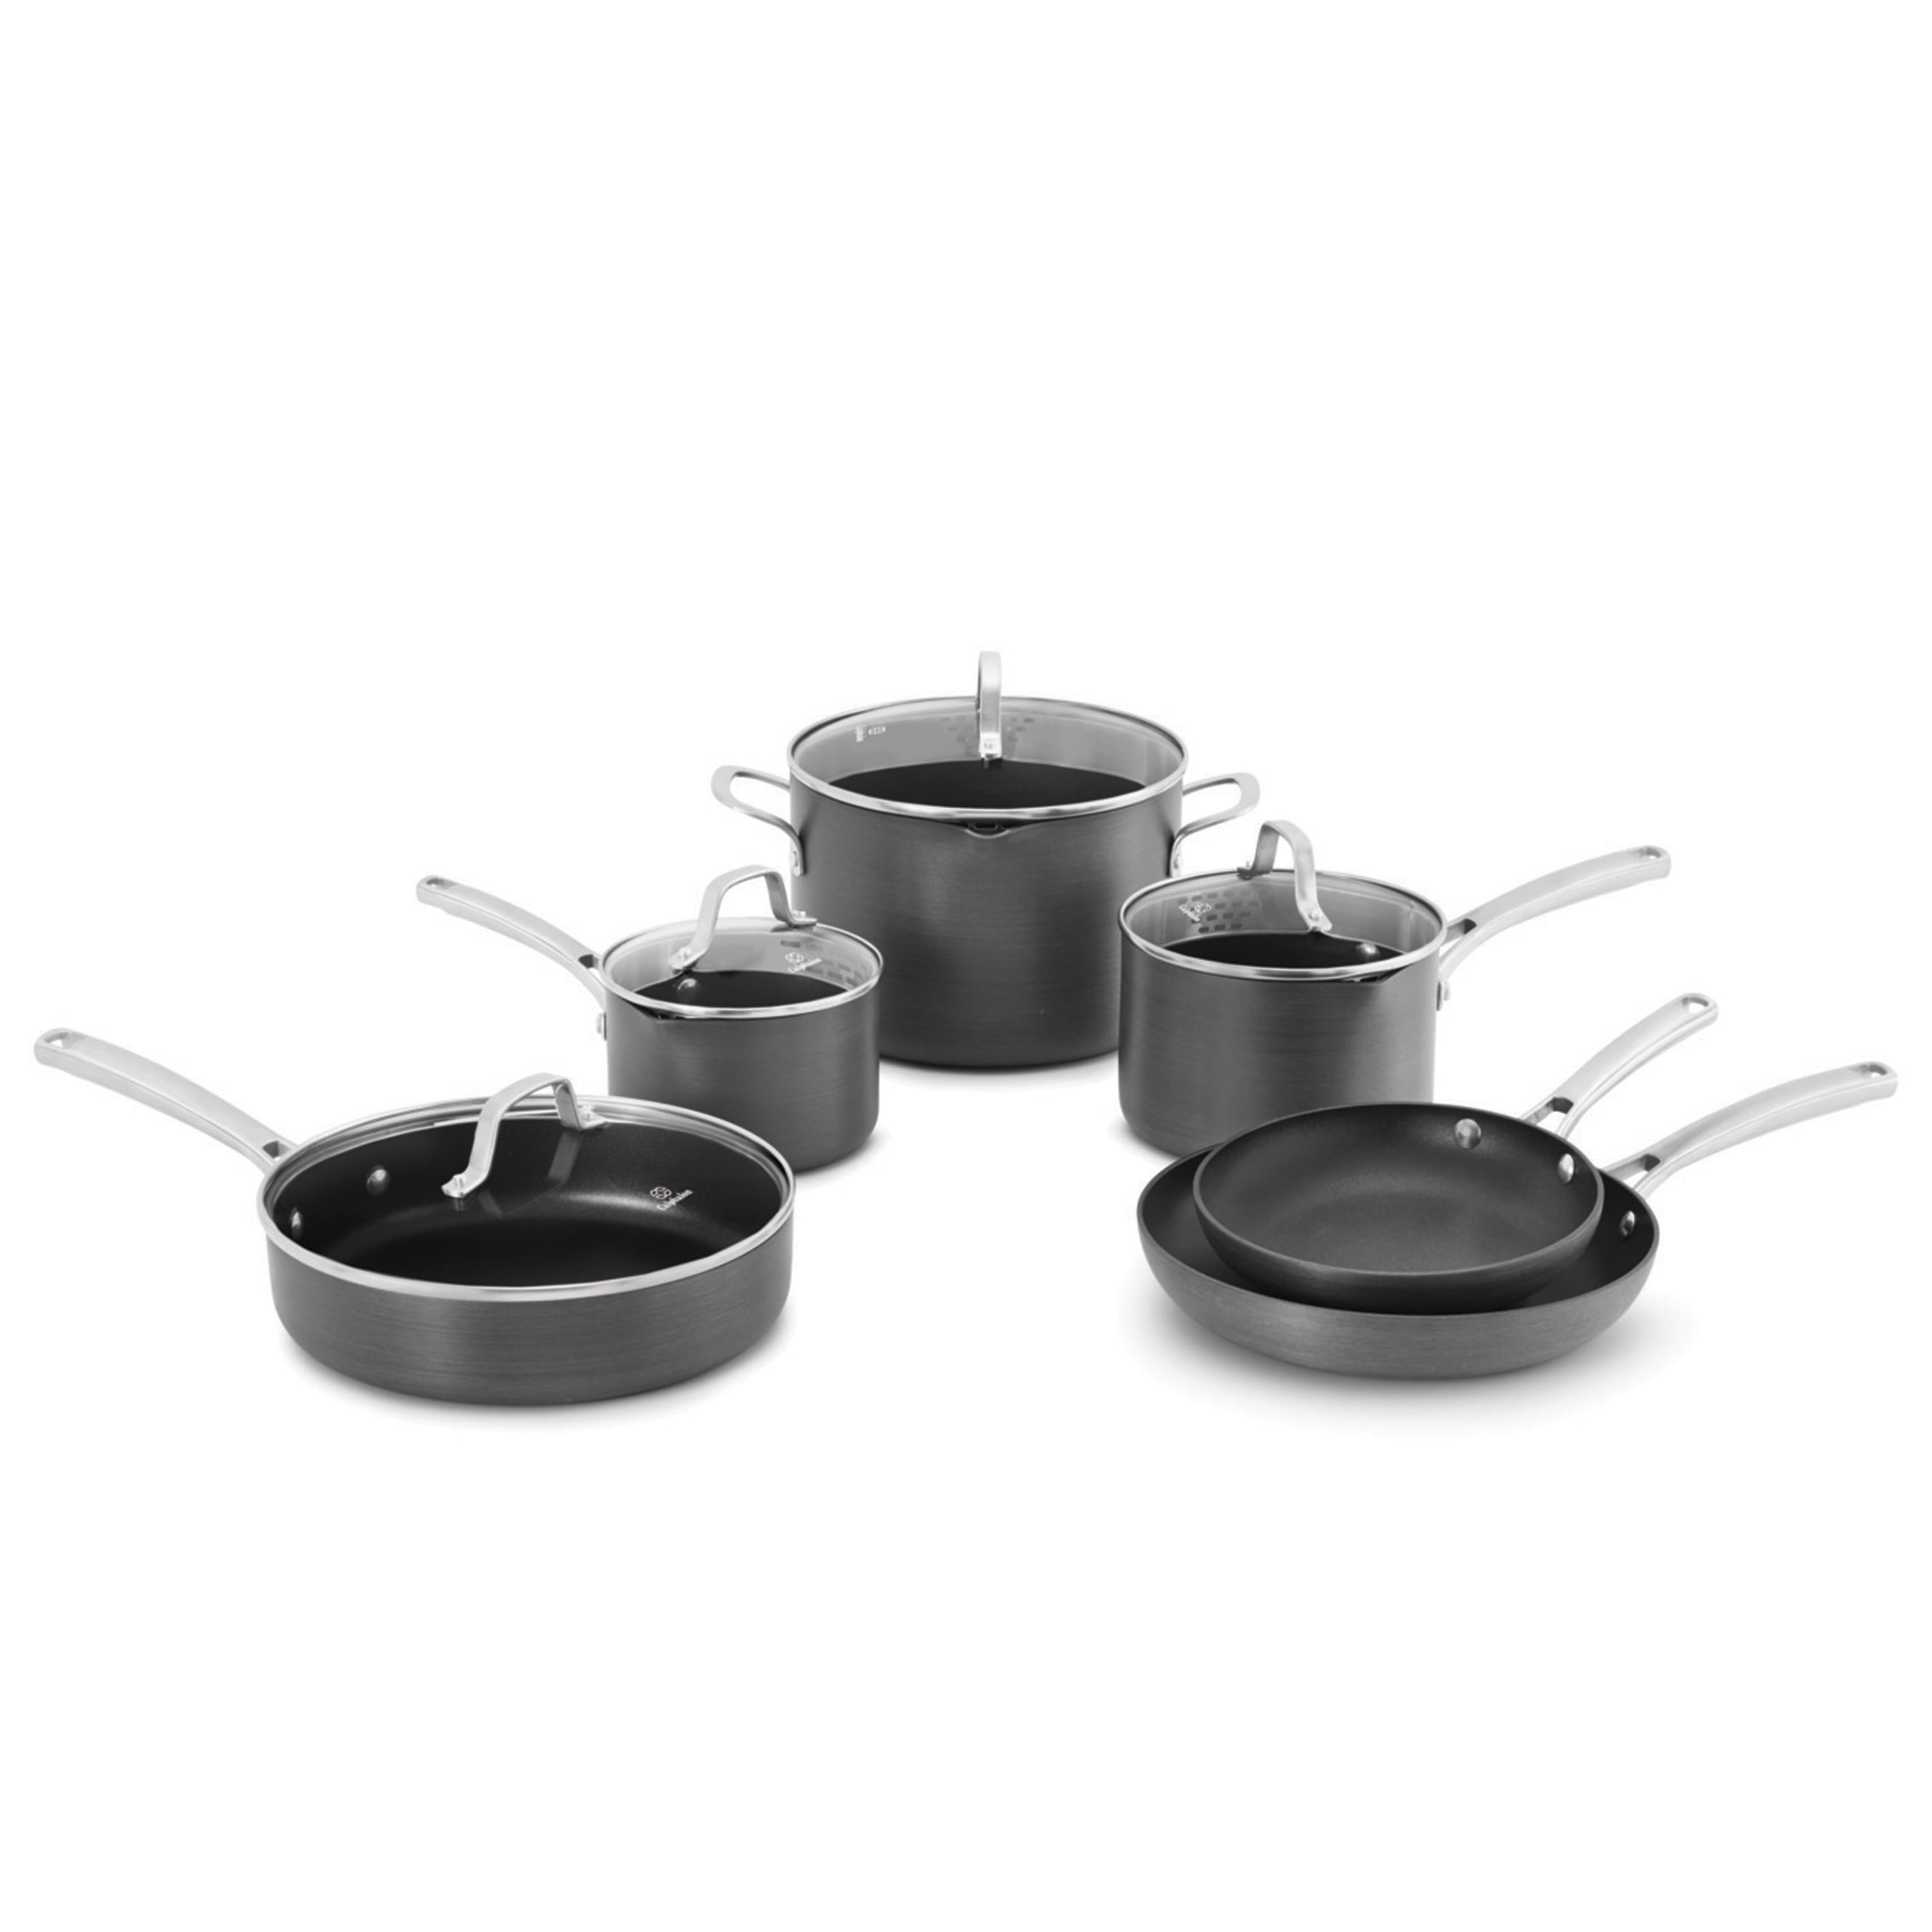 Calphalon Signature 10-Piece Non-Stick Cookware Set with Bonus 12 Everyday  Pan + Reviews